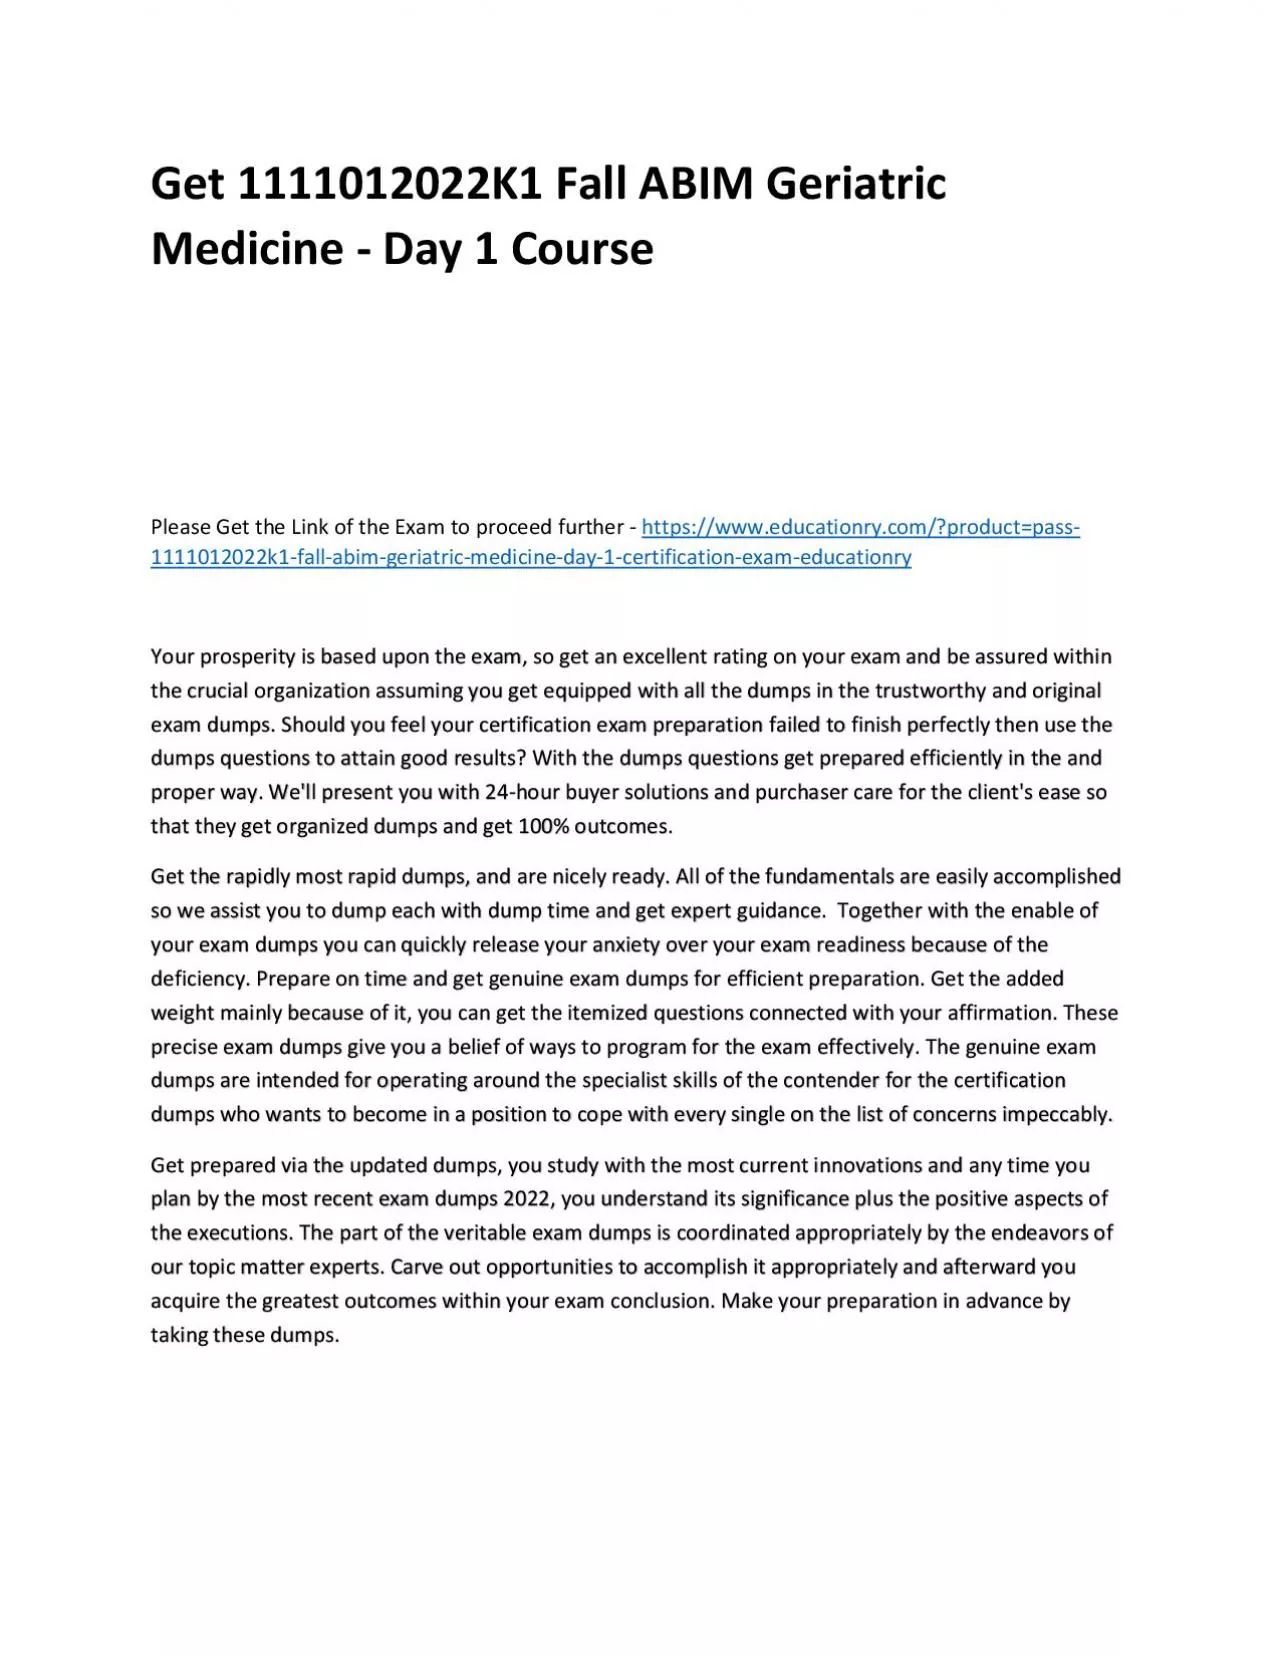 Get 1111012022K1 Fall ABIM Geriatric Medicine - Day 1 Practice Course